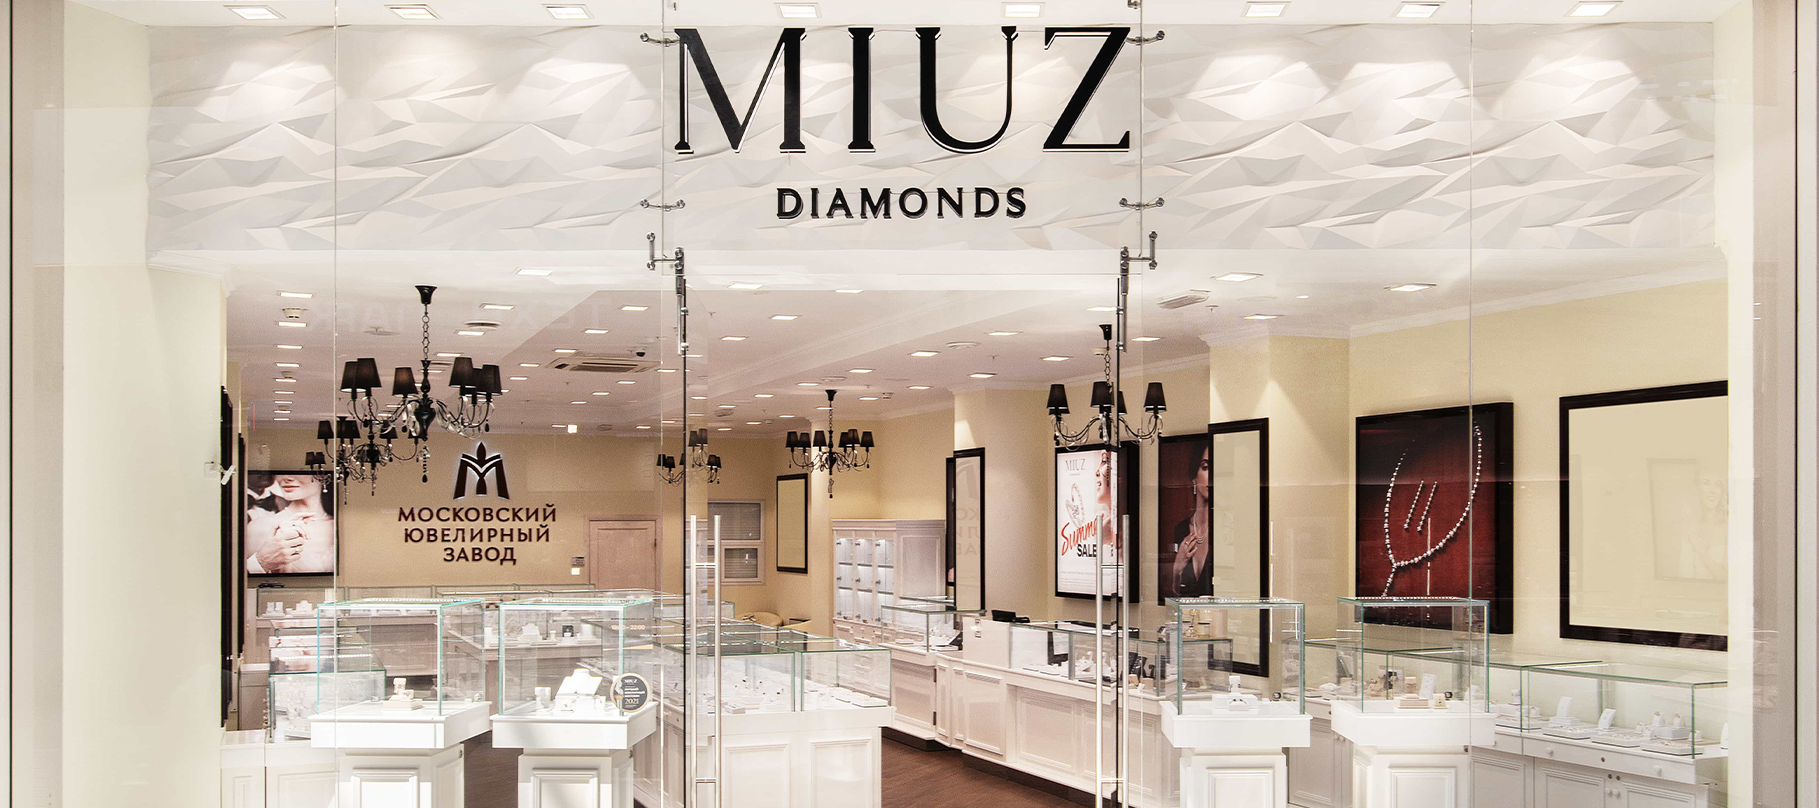 MIUZ Diamonds ЕВРОПОЛИС (ювелирный центр) в городе Москва – полнаяинформация о магазине